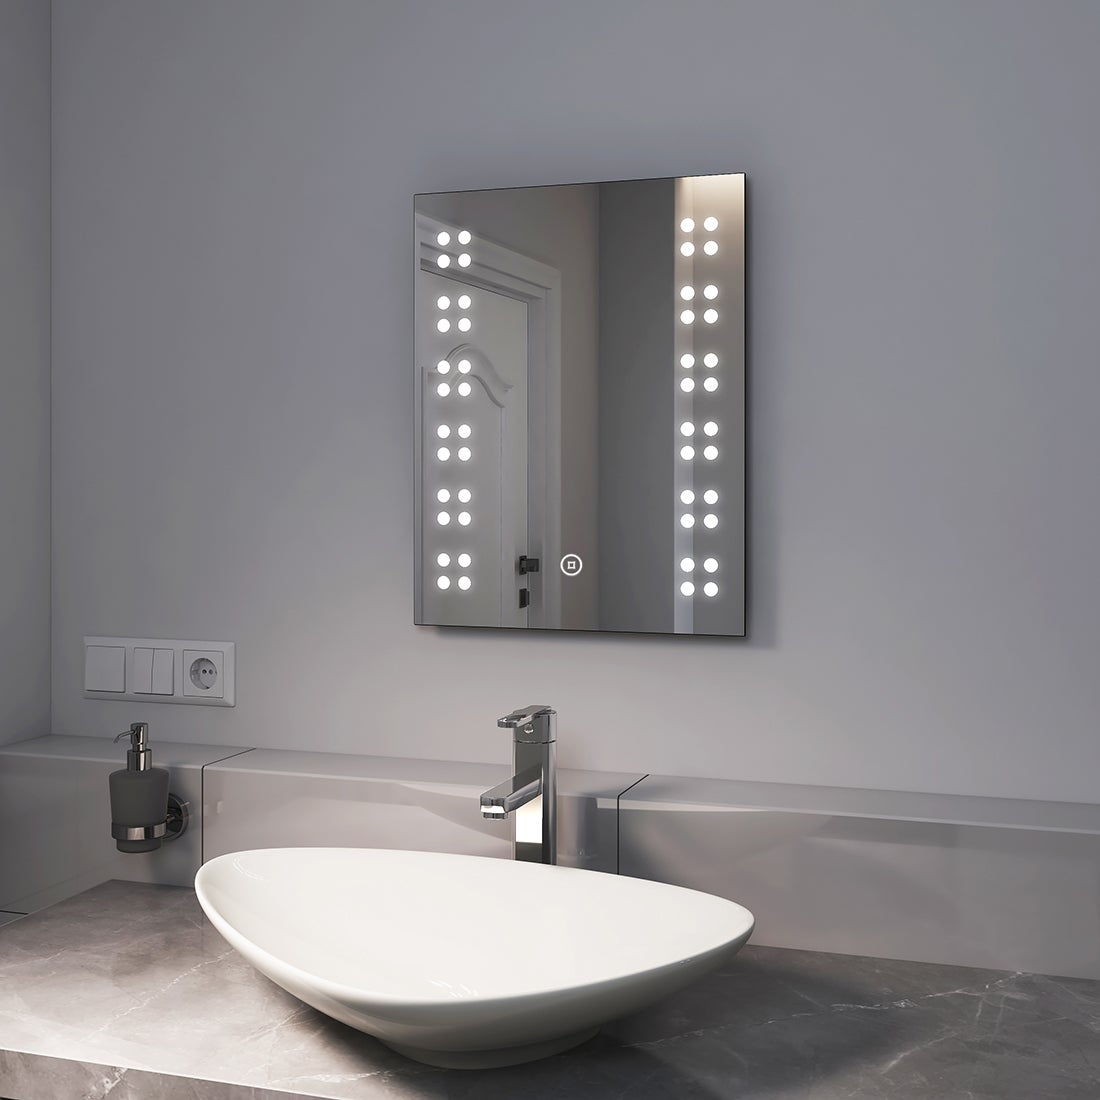 EMKE LED Badspiegel mit Beleuchtung 39x50cm Badezimmerspiegel mit Touchschalter Wandspiegel mit Beleuchtung 6000K Kaltweiß Lichtspiegel IP44 energiesparend